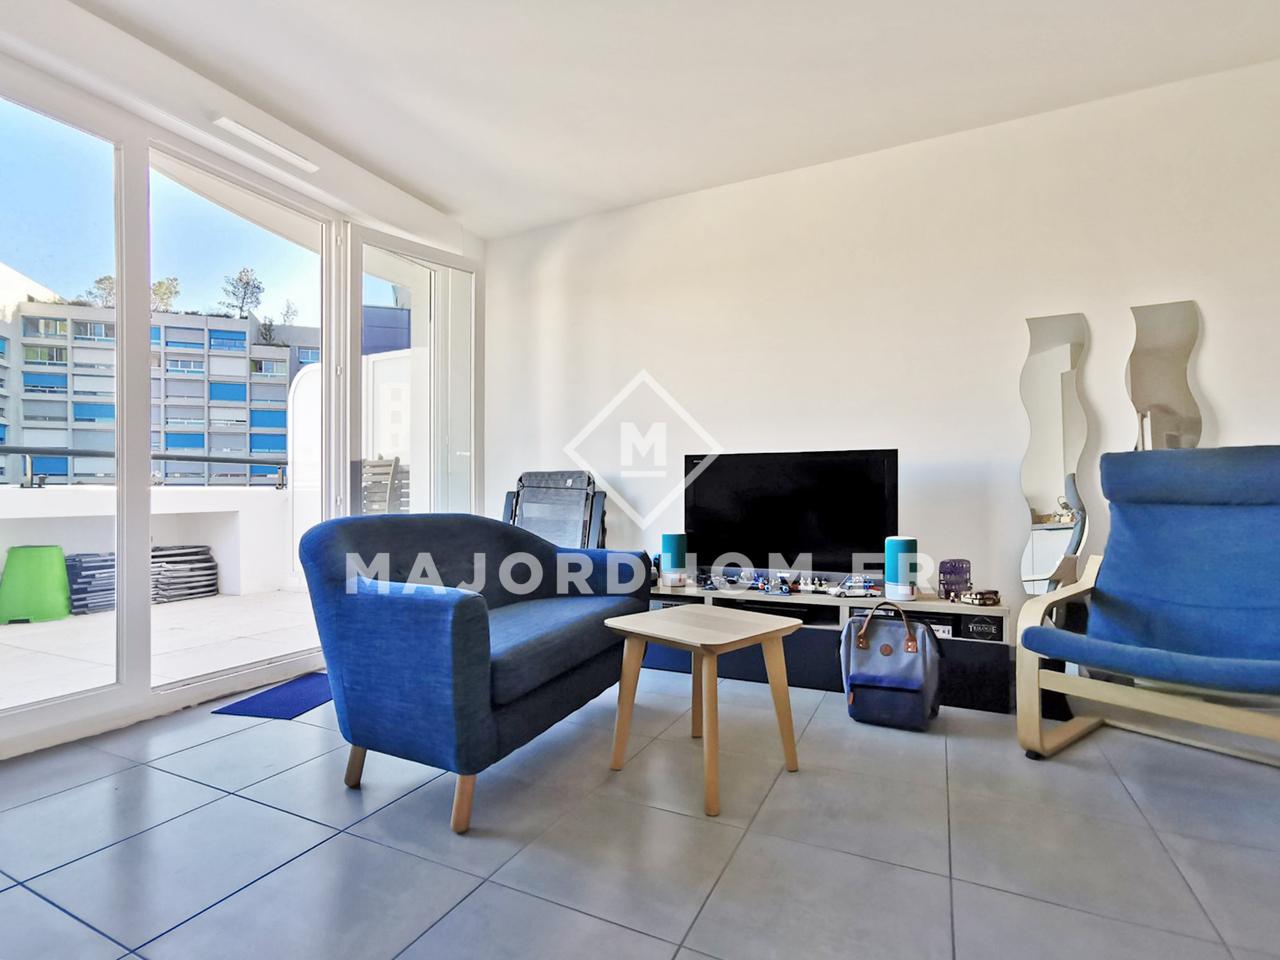 Vente Appartement 45m² 2 Pièces à Marseille (13003) - Agence Immobilière Majordhom